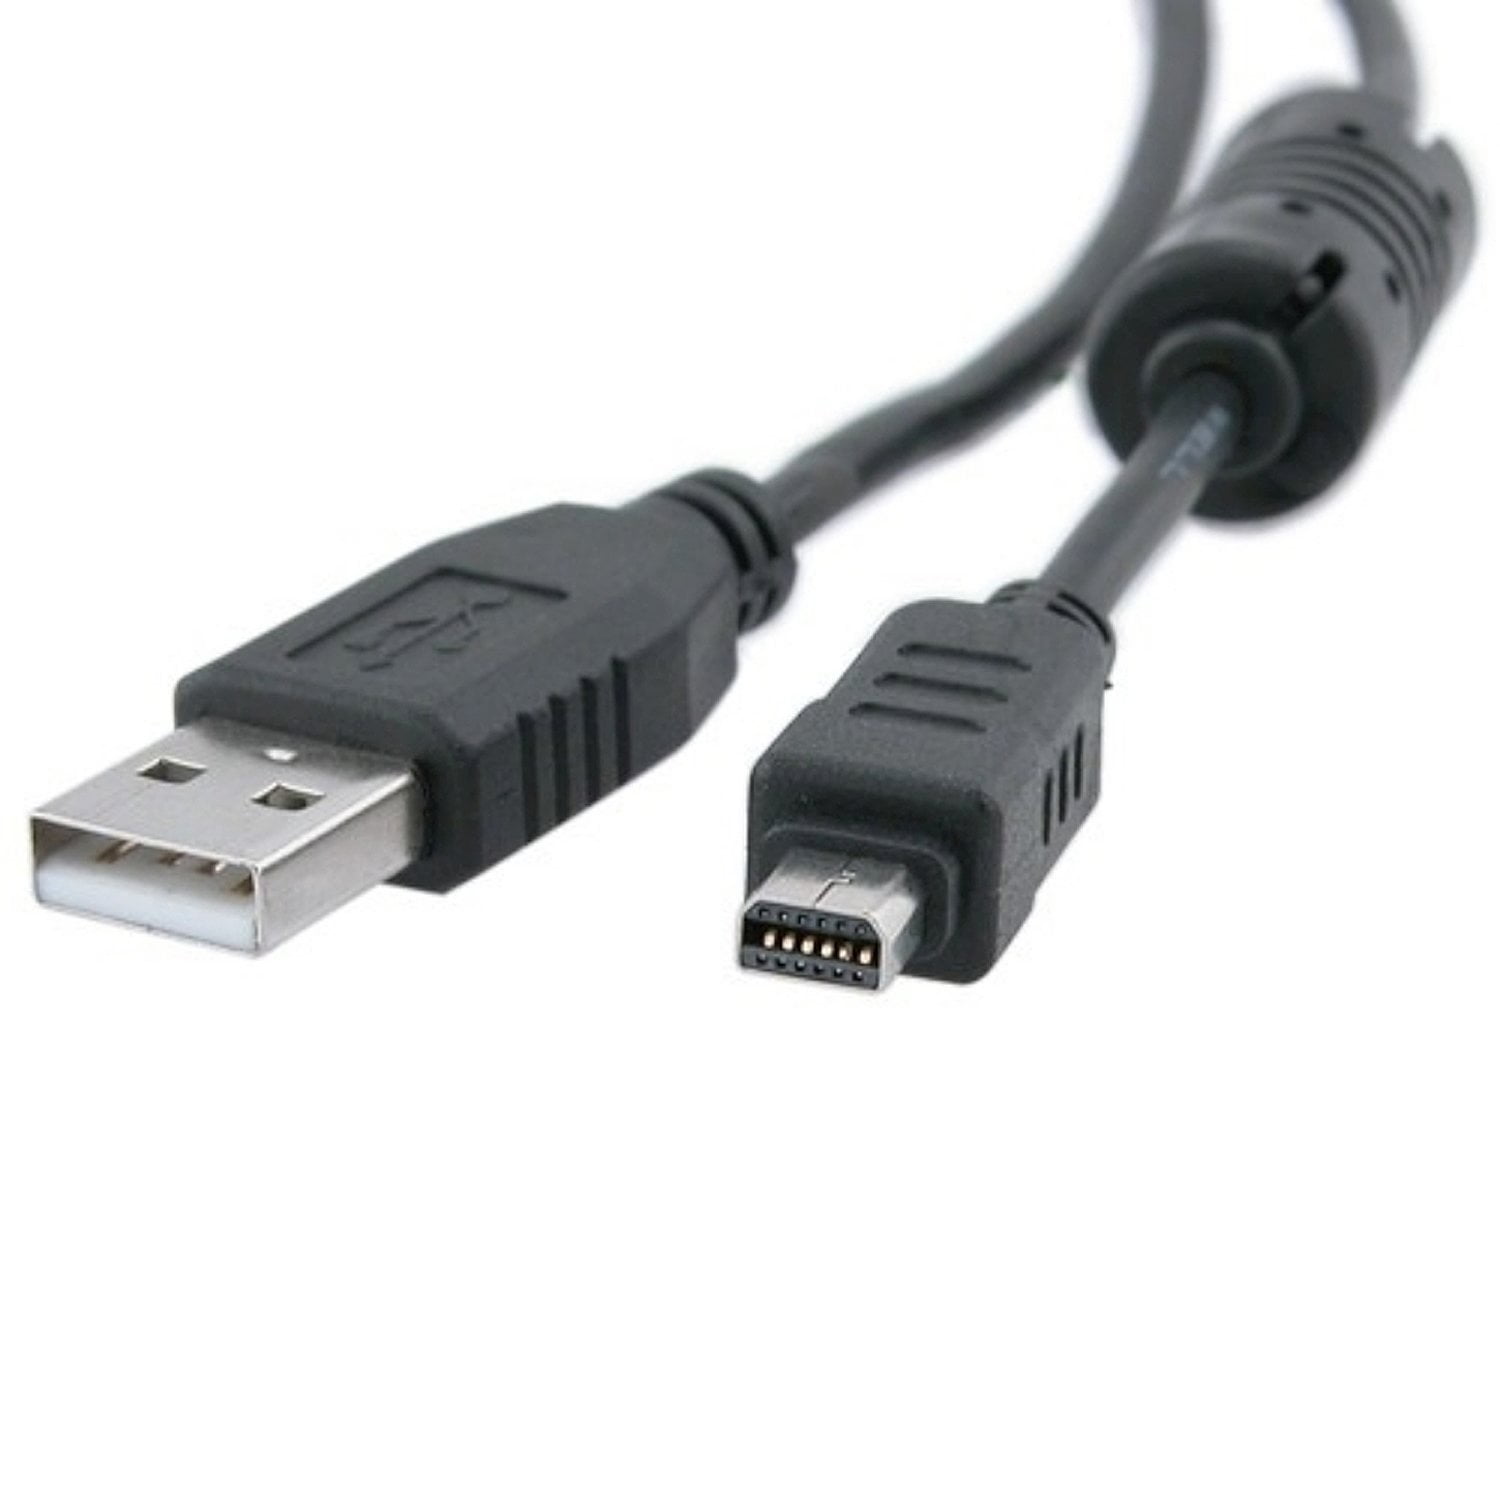 USB Datenkabel für Olympus Tough TG-870 